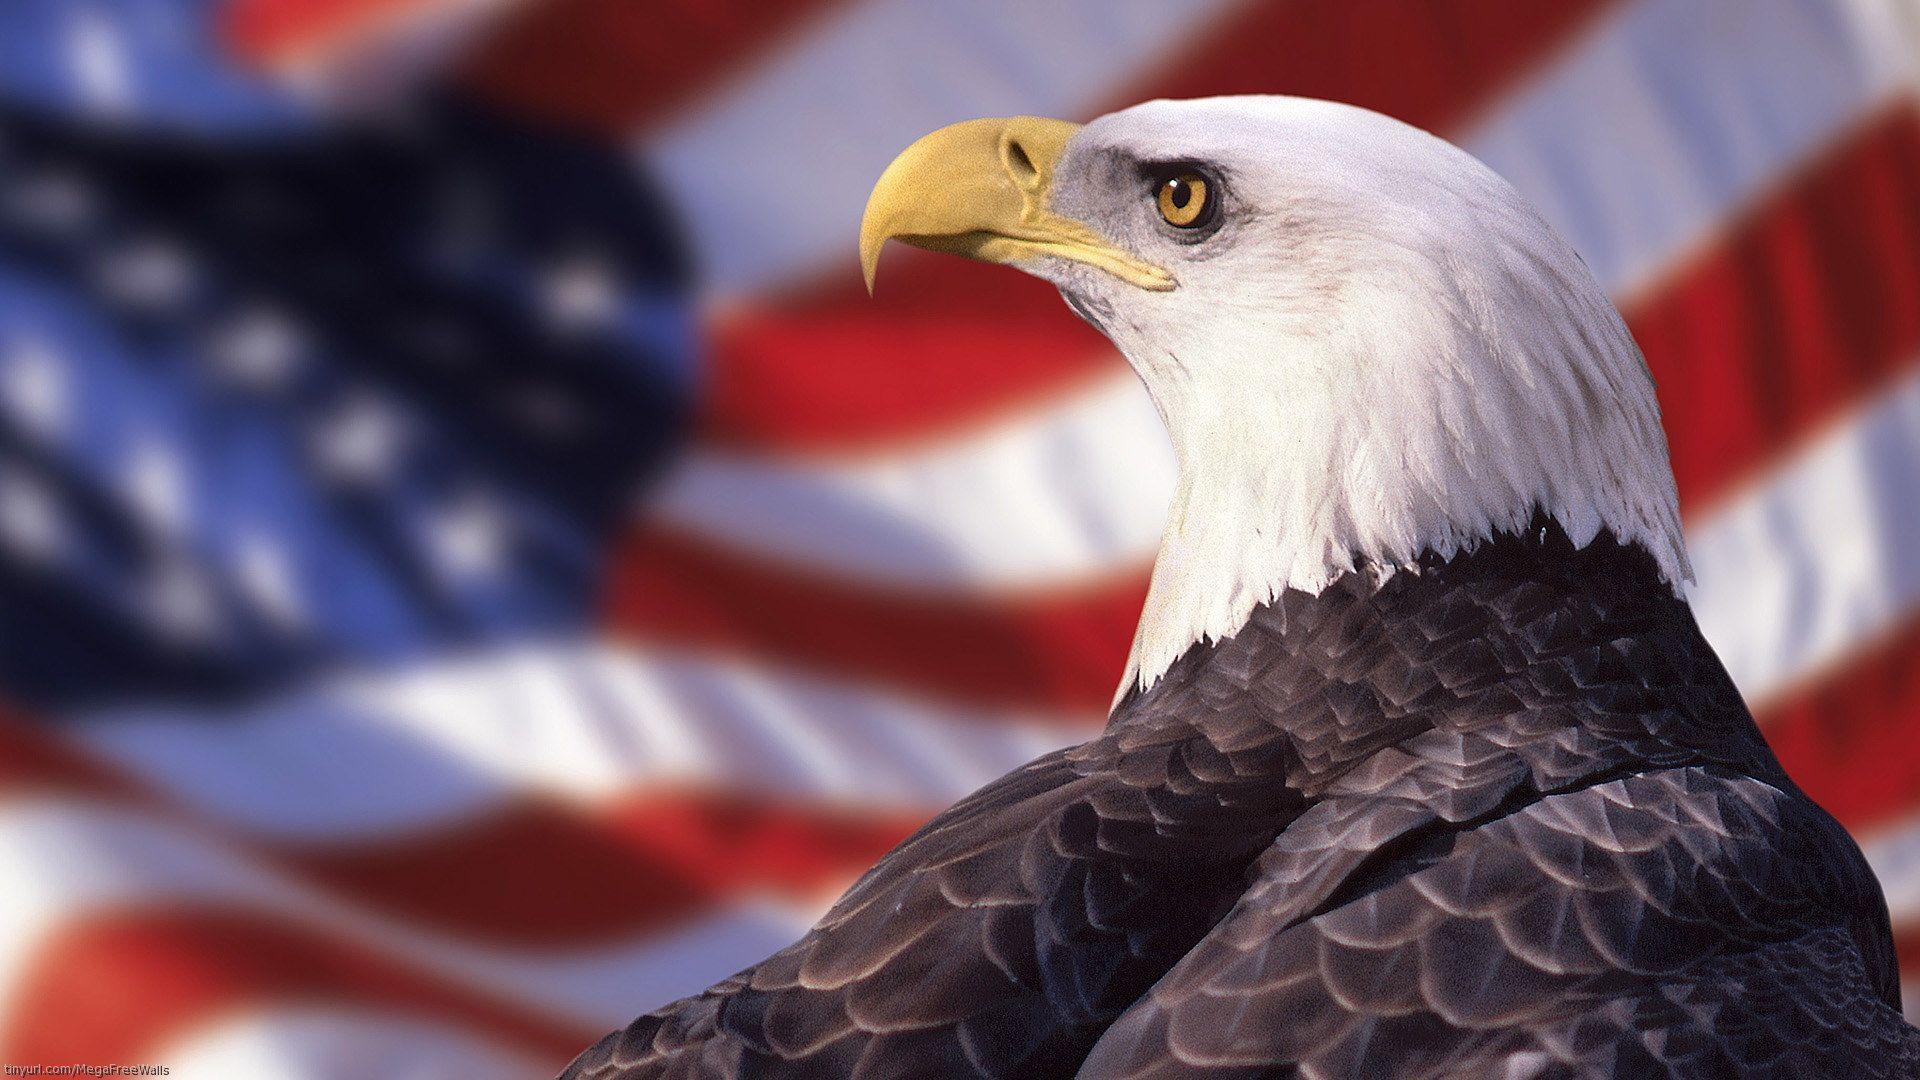 Amercan Bald Eagle